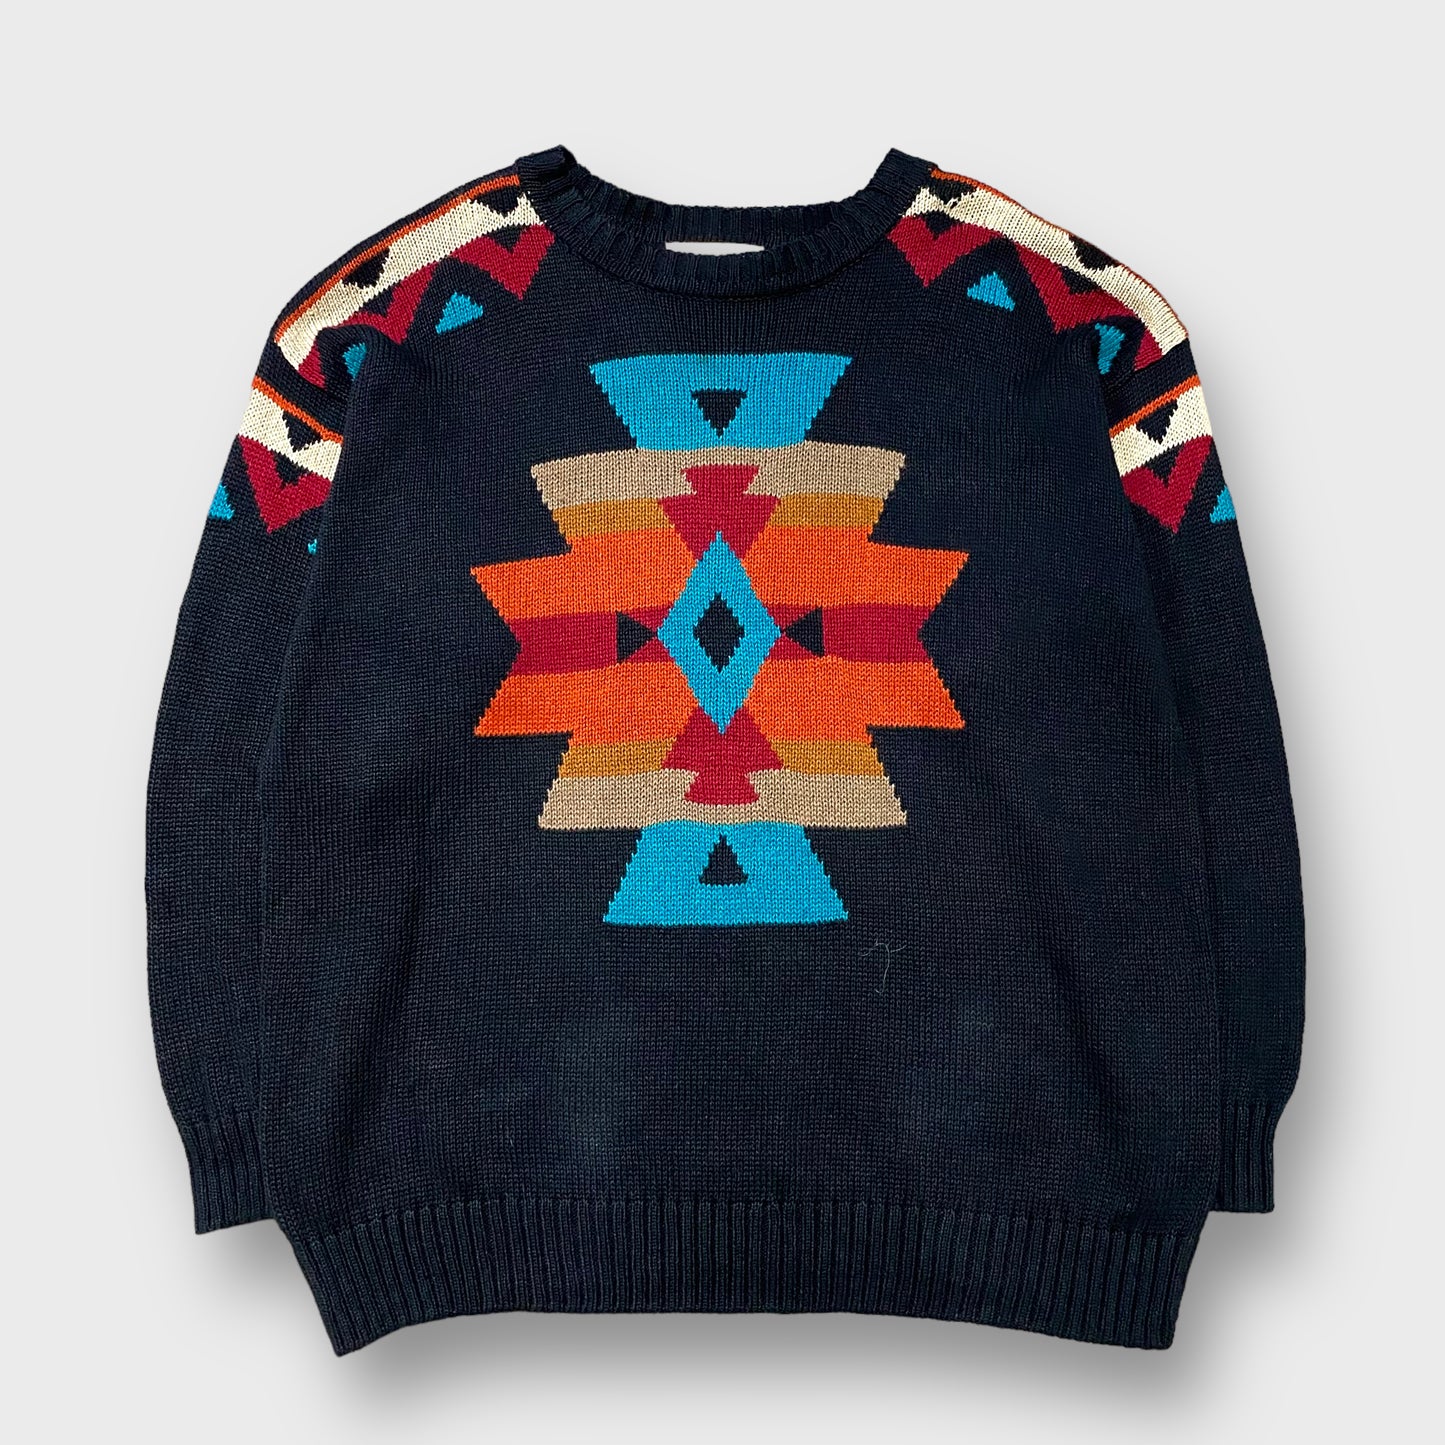 Native pattern knit sweater